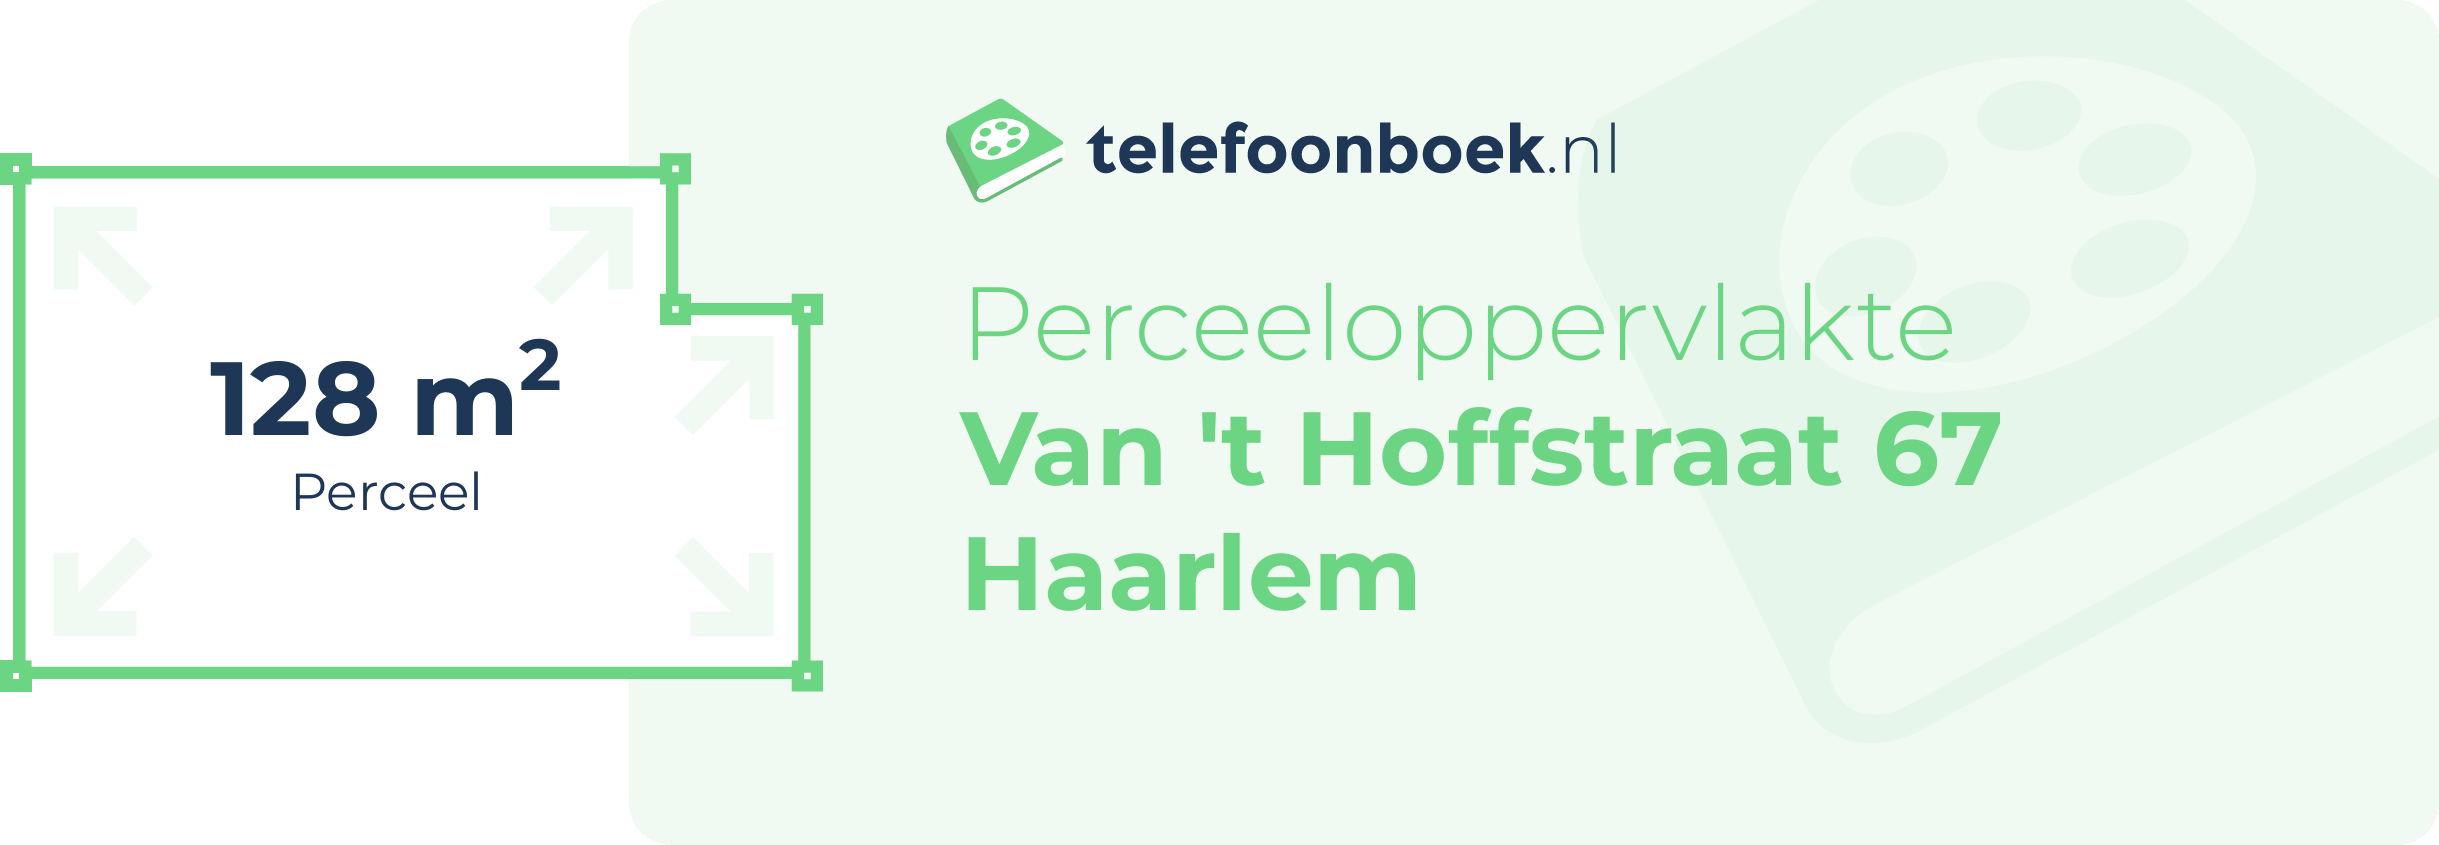 Perceeloppervlakte Van 't Hoffstraat 67 Haarlem